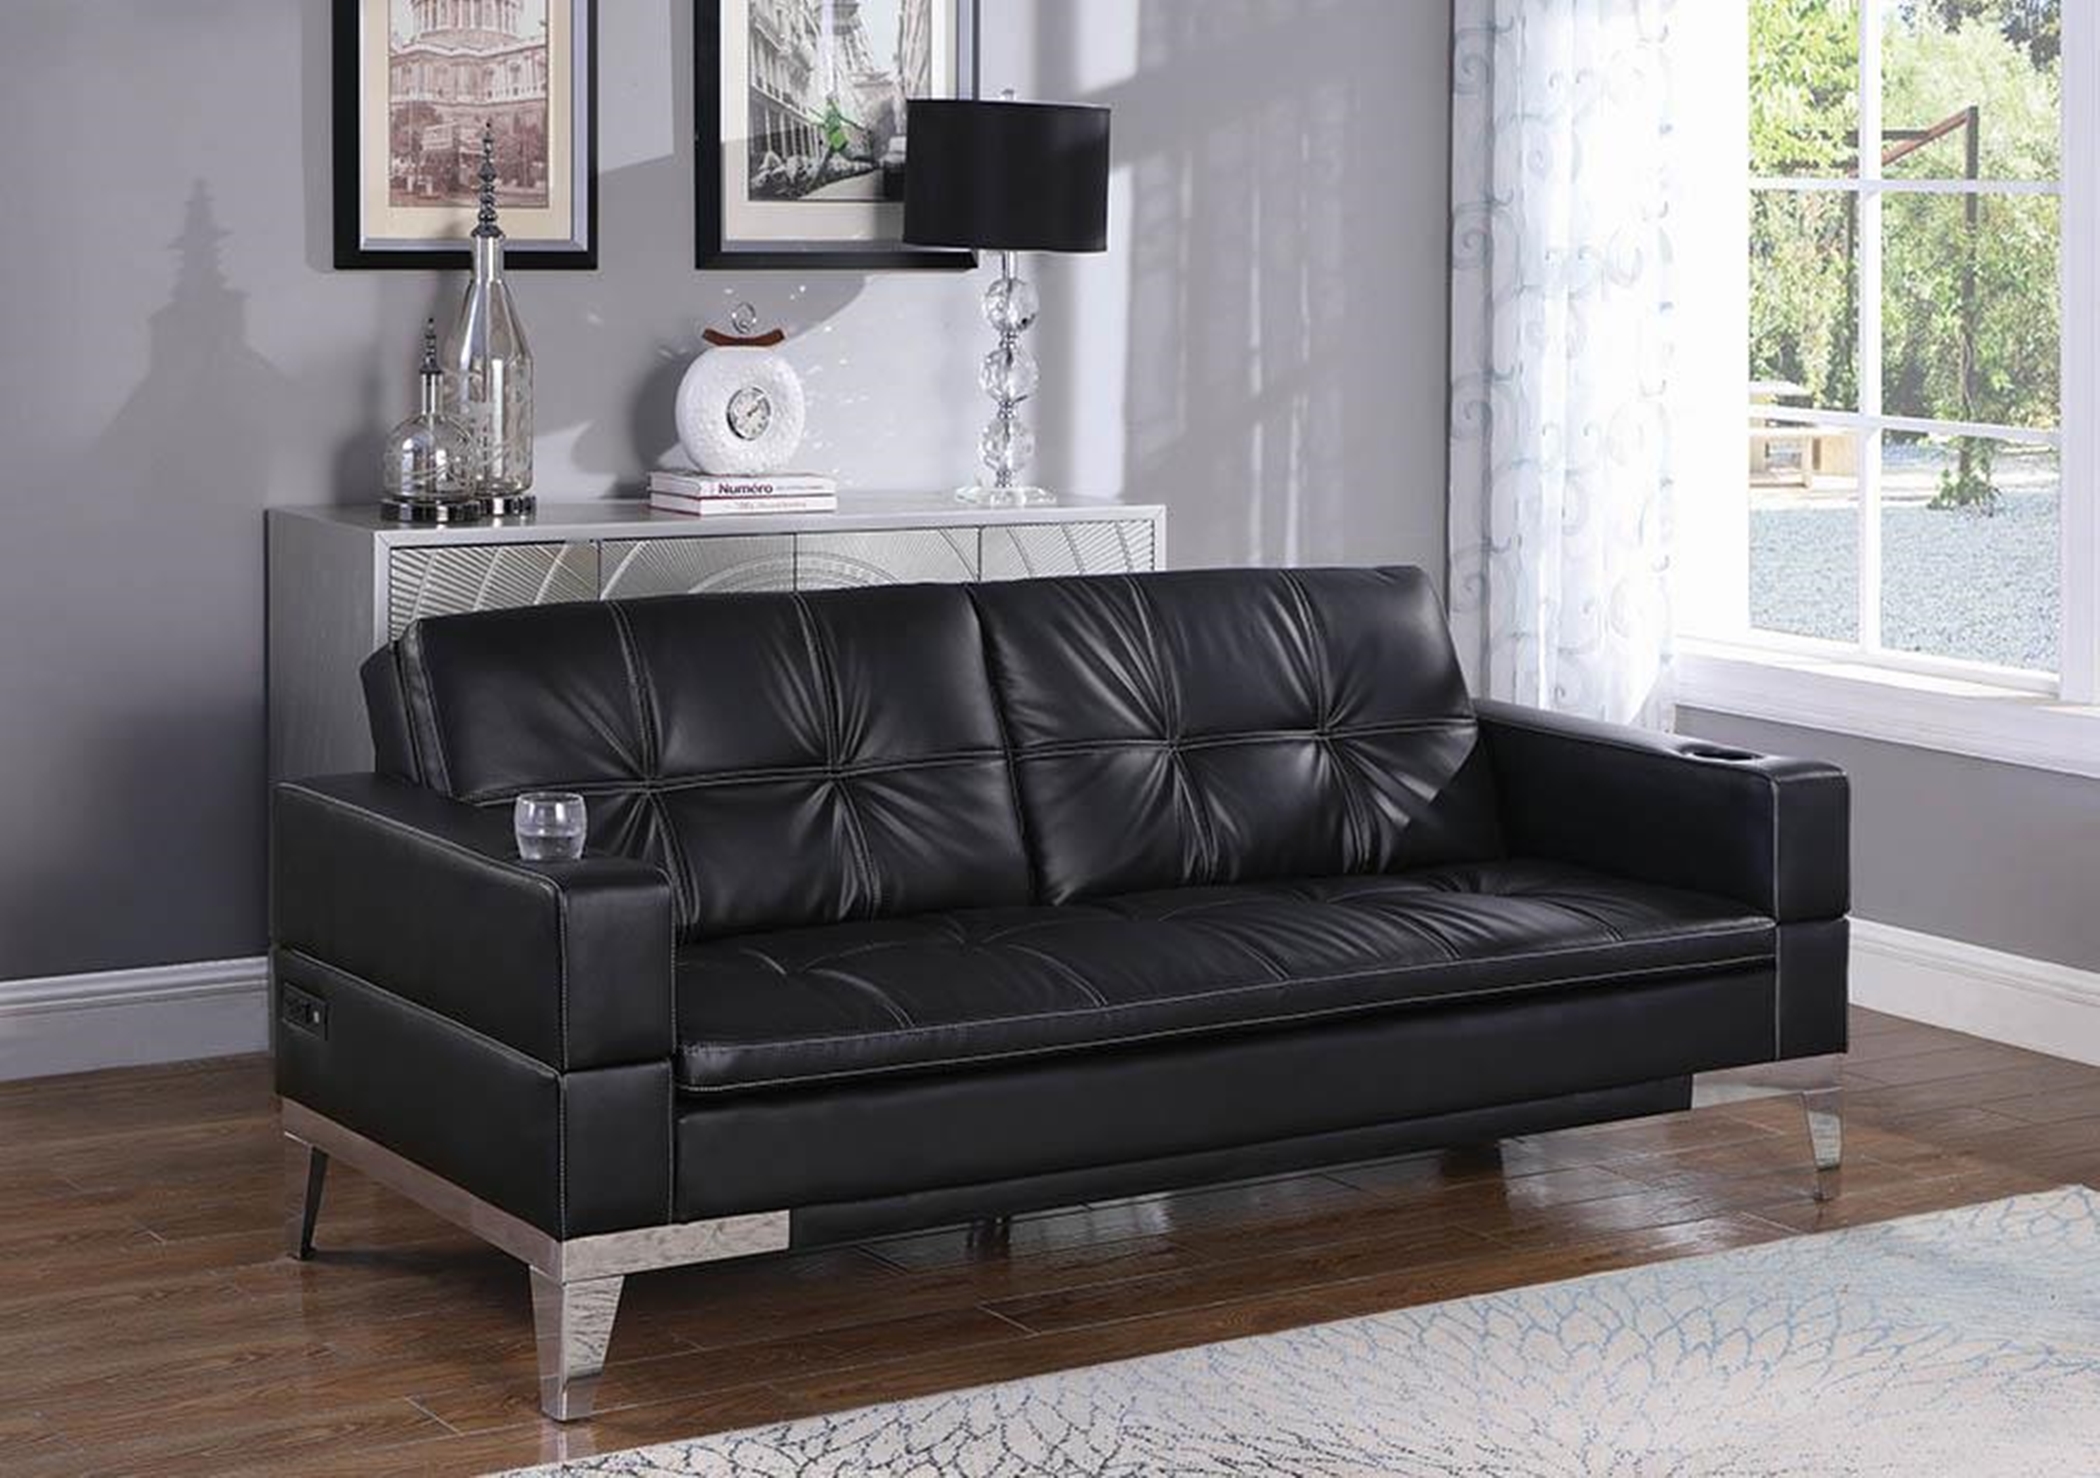 Contemporary Black and Chrome Sofa Bed - Click Image to Close